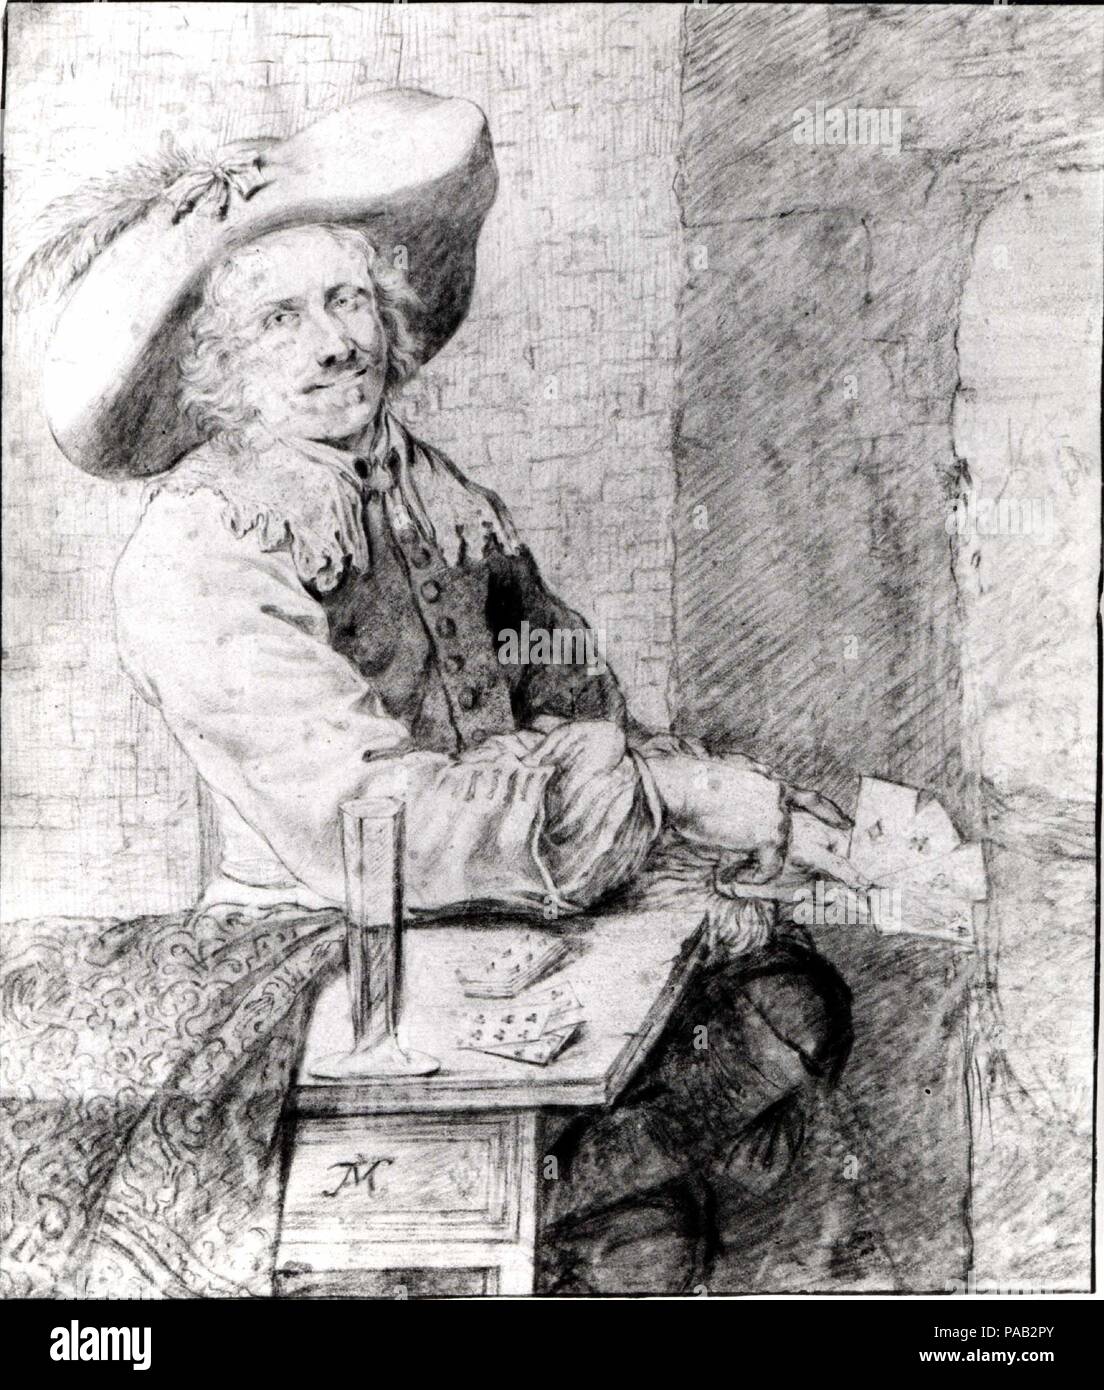 Der cardplayer. Artist: Kopie nach Frans van Mieris der Ältere (Niederländisch, Leiden 1635-1681 Leiden). Abmessungen: 4 5/8 x 5 7/8 in. (11,7 x 15 cm). Datum: 1655-81. Diese Studie wird gedacht, um eine Kopie einer Zeichnung werden von Frans van Mieris der Ältere, der viel Im achtzehnten Jahrhundert gefeiert wurde. Angehende zu einem immer höheren Grad der Naturalismus in seine Figuren, van Mieris porträtiert den gemeinen Mann in die niederländische Gesellschaft mit einer Haltung und lässige Eleganz, die mit der lokalen Elite legte Einspruch ein, und der europäische Adel. Hier die Karte player lehnt sich zurück vertrauensvoll an sie, und er lächelt und verweist auf seine gewinnende Hand, einladend. Stockfoto